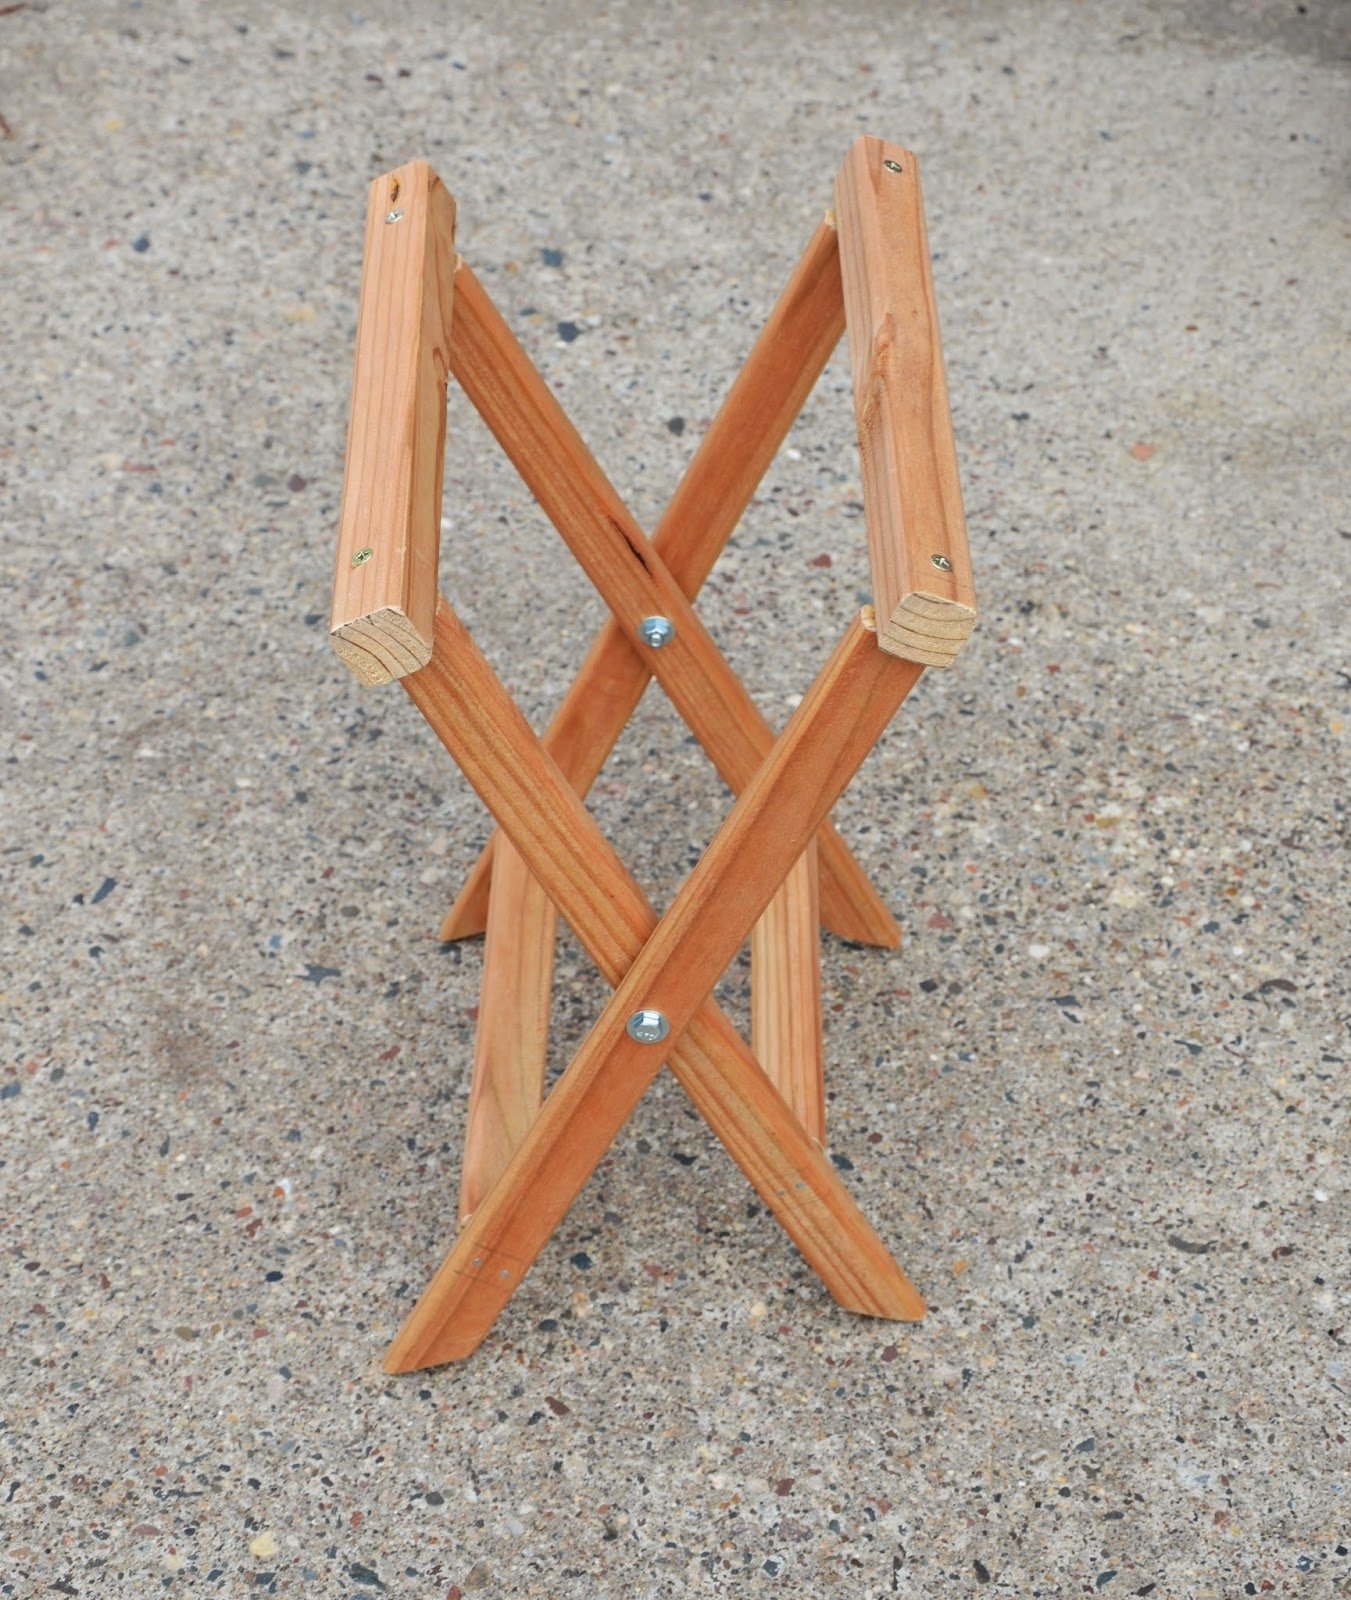 Складной стул своими руками из дерева. Раскладной стульчик. Самодельный складной табурет. Складной стульчик из дерева. Самодельный раскладной стул.